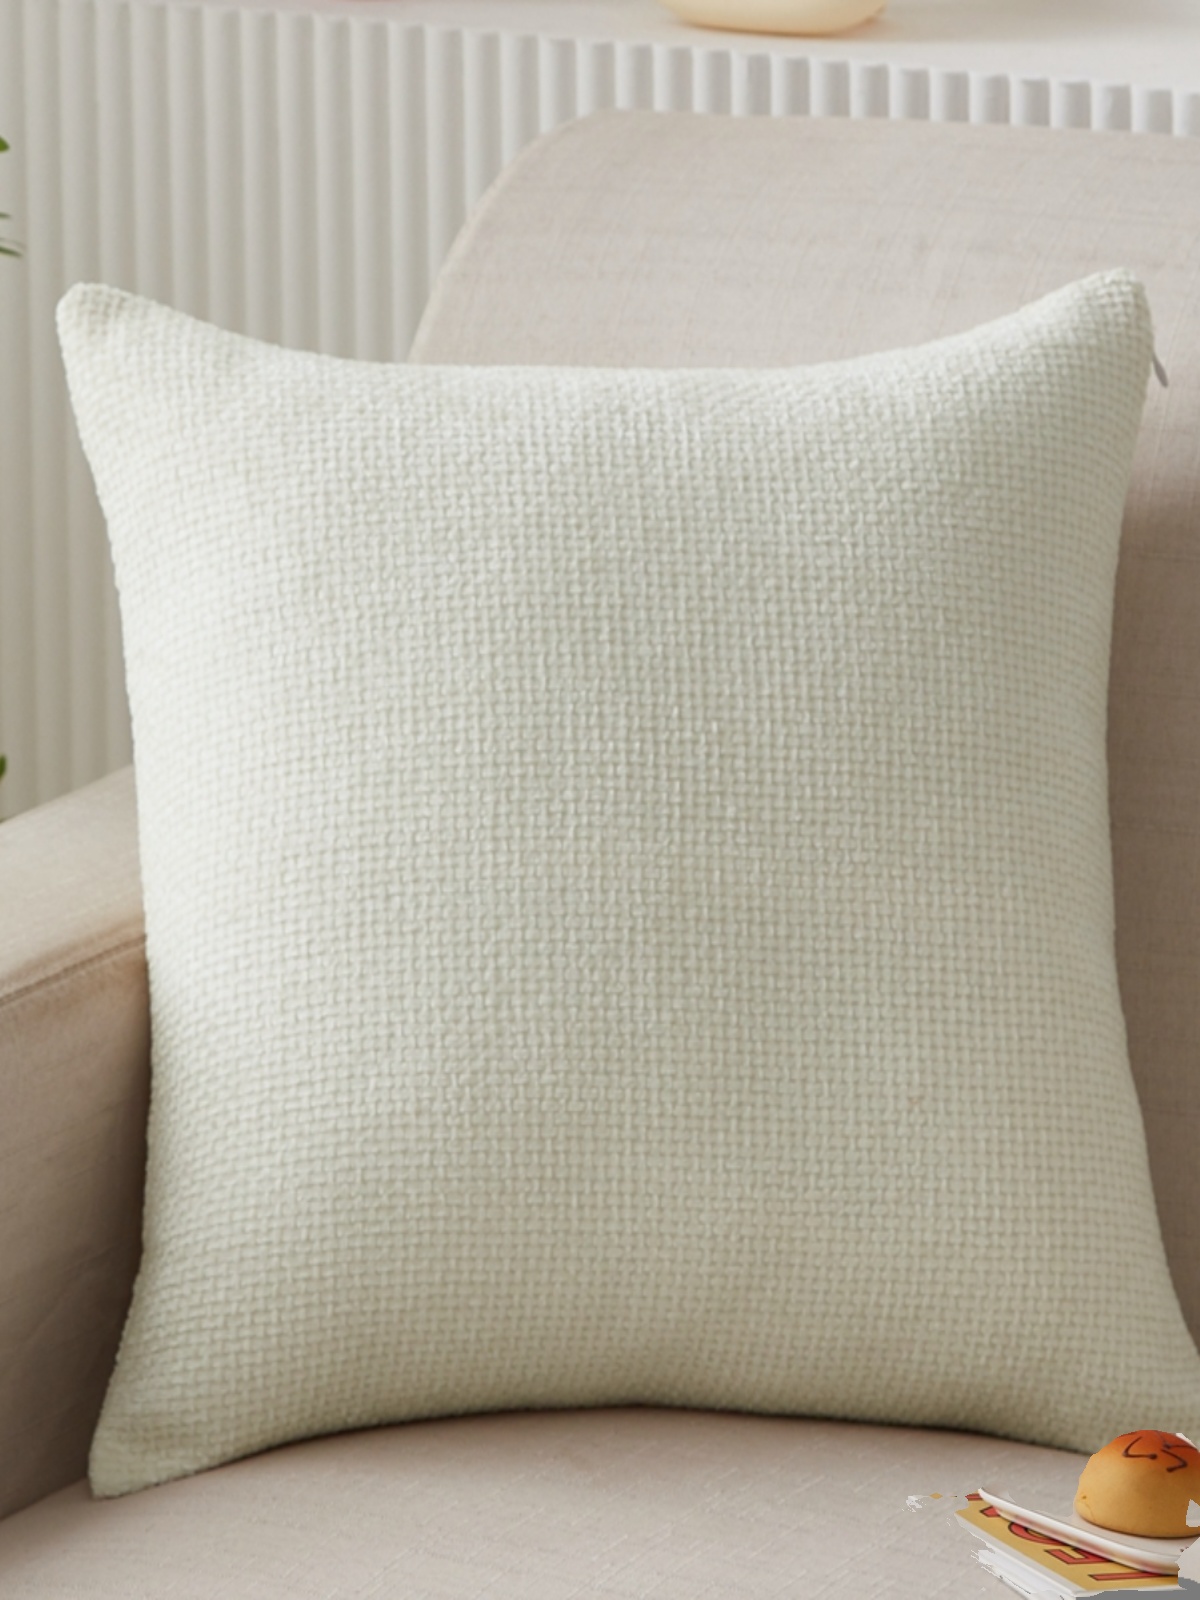 簡約時尚沙發抱枕雪尼爾材質超大白色家用超大抱枕套 (4.2折)